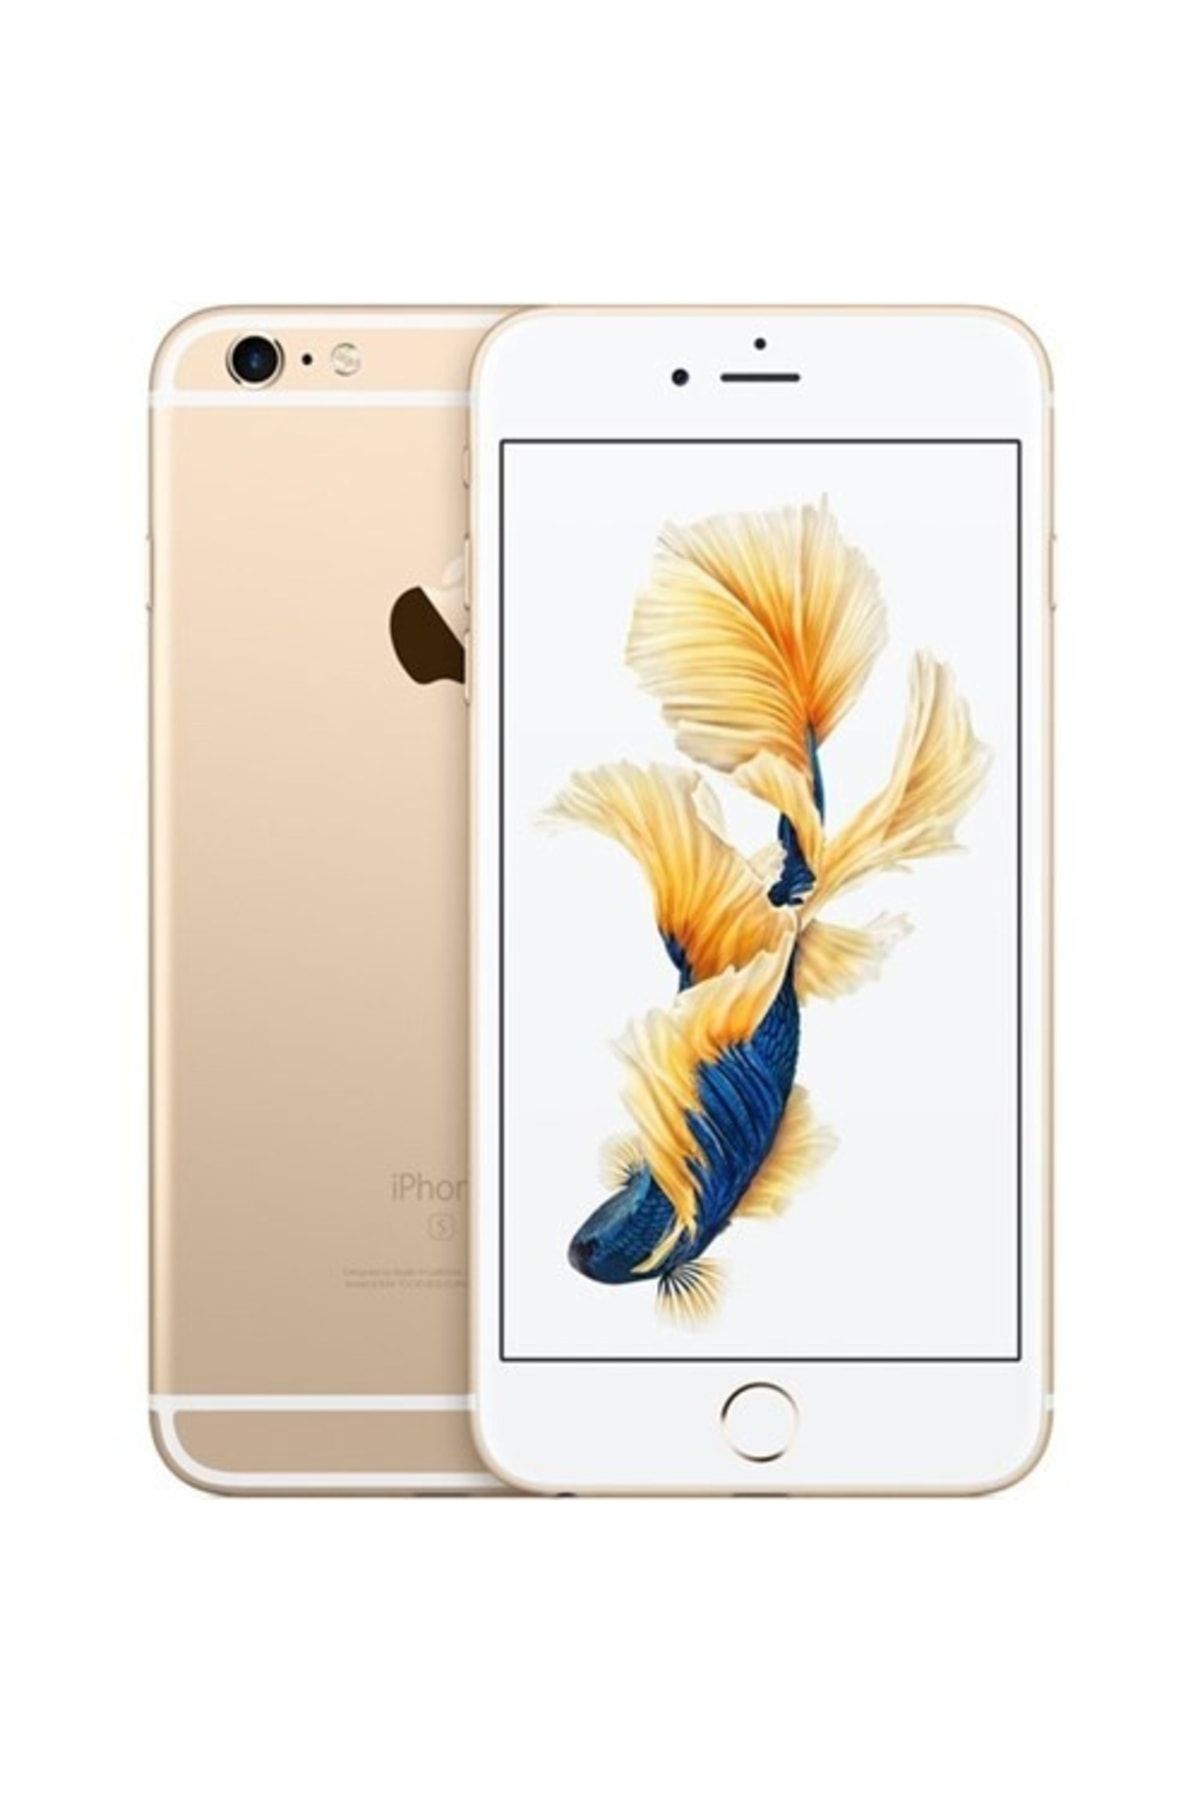 Apple Yenilenmiş iPhone 6s 32 GB Altın Cep Telefonu (12 Ay Garantili)